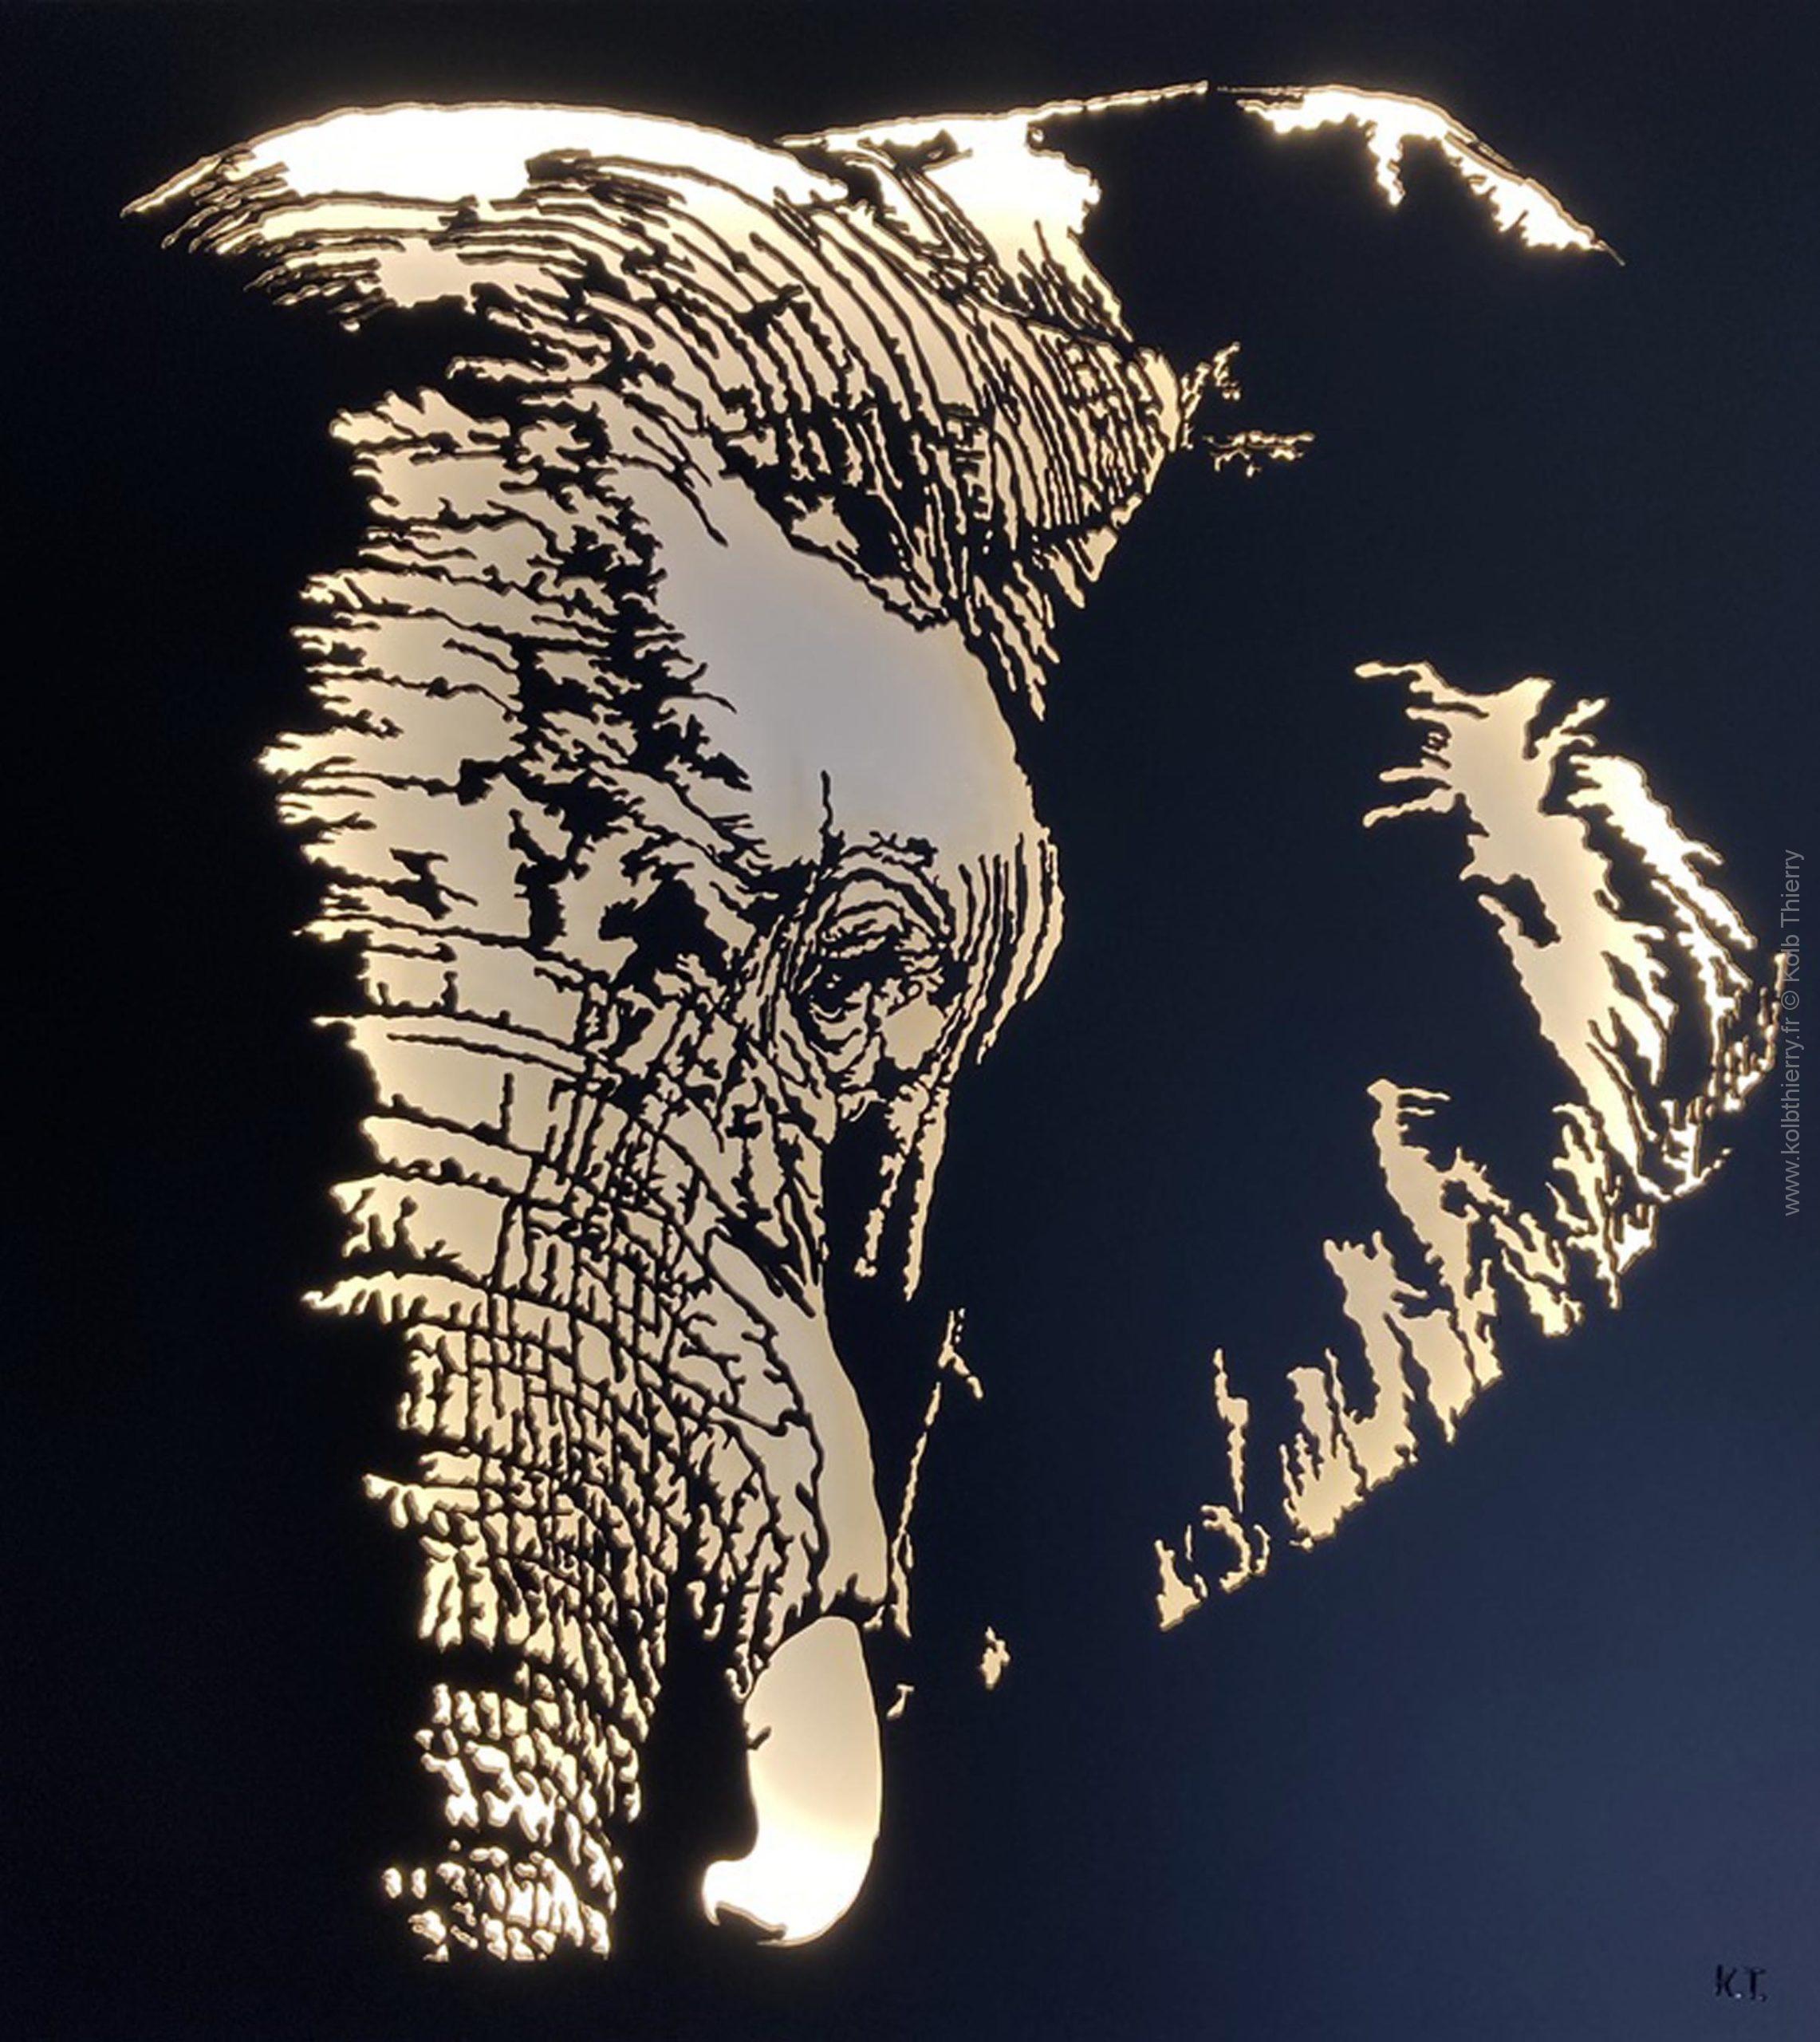 10 mai, en direct de l’atelier, Gondwana sculpture d’une Tête d’un magnifique Eléphant est terminée